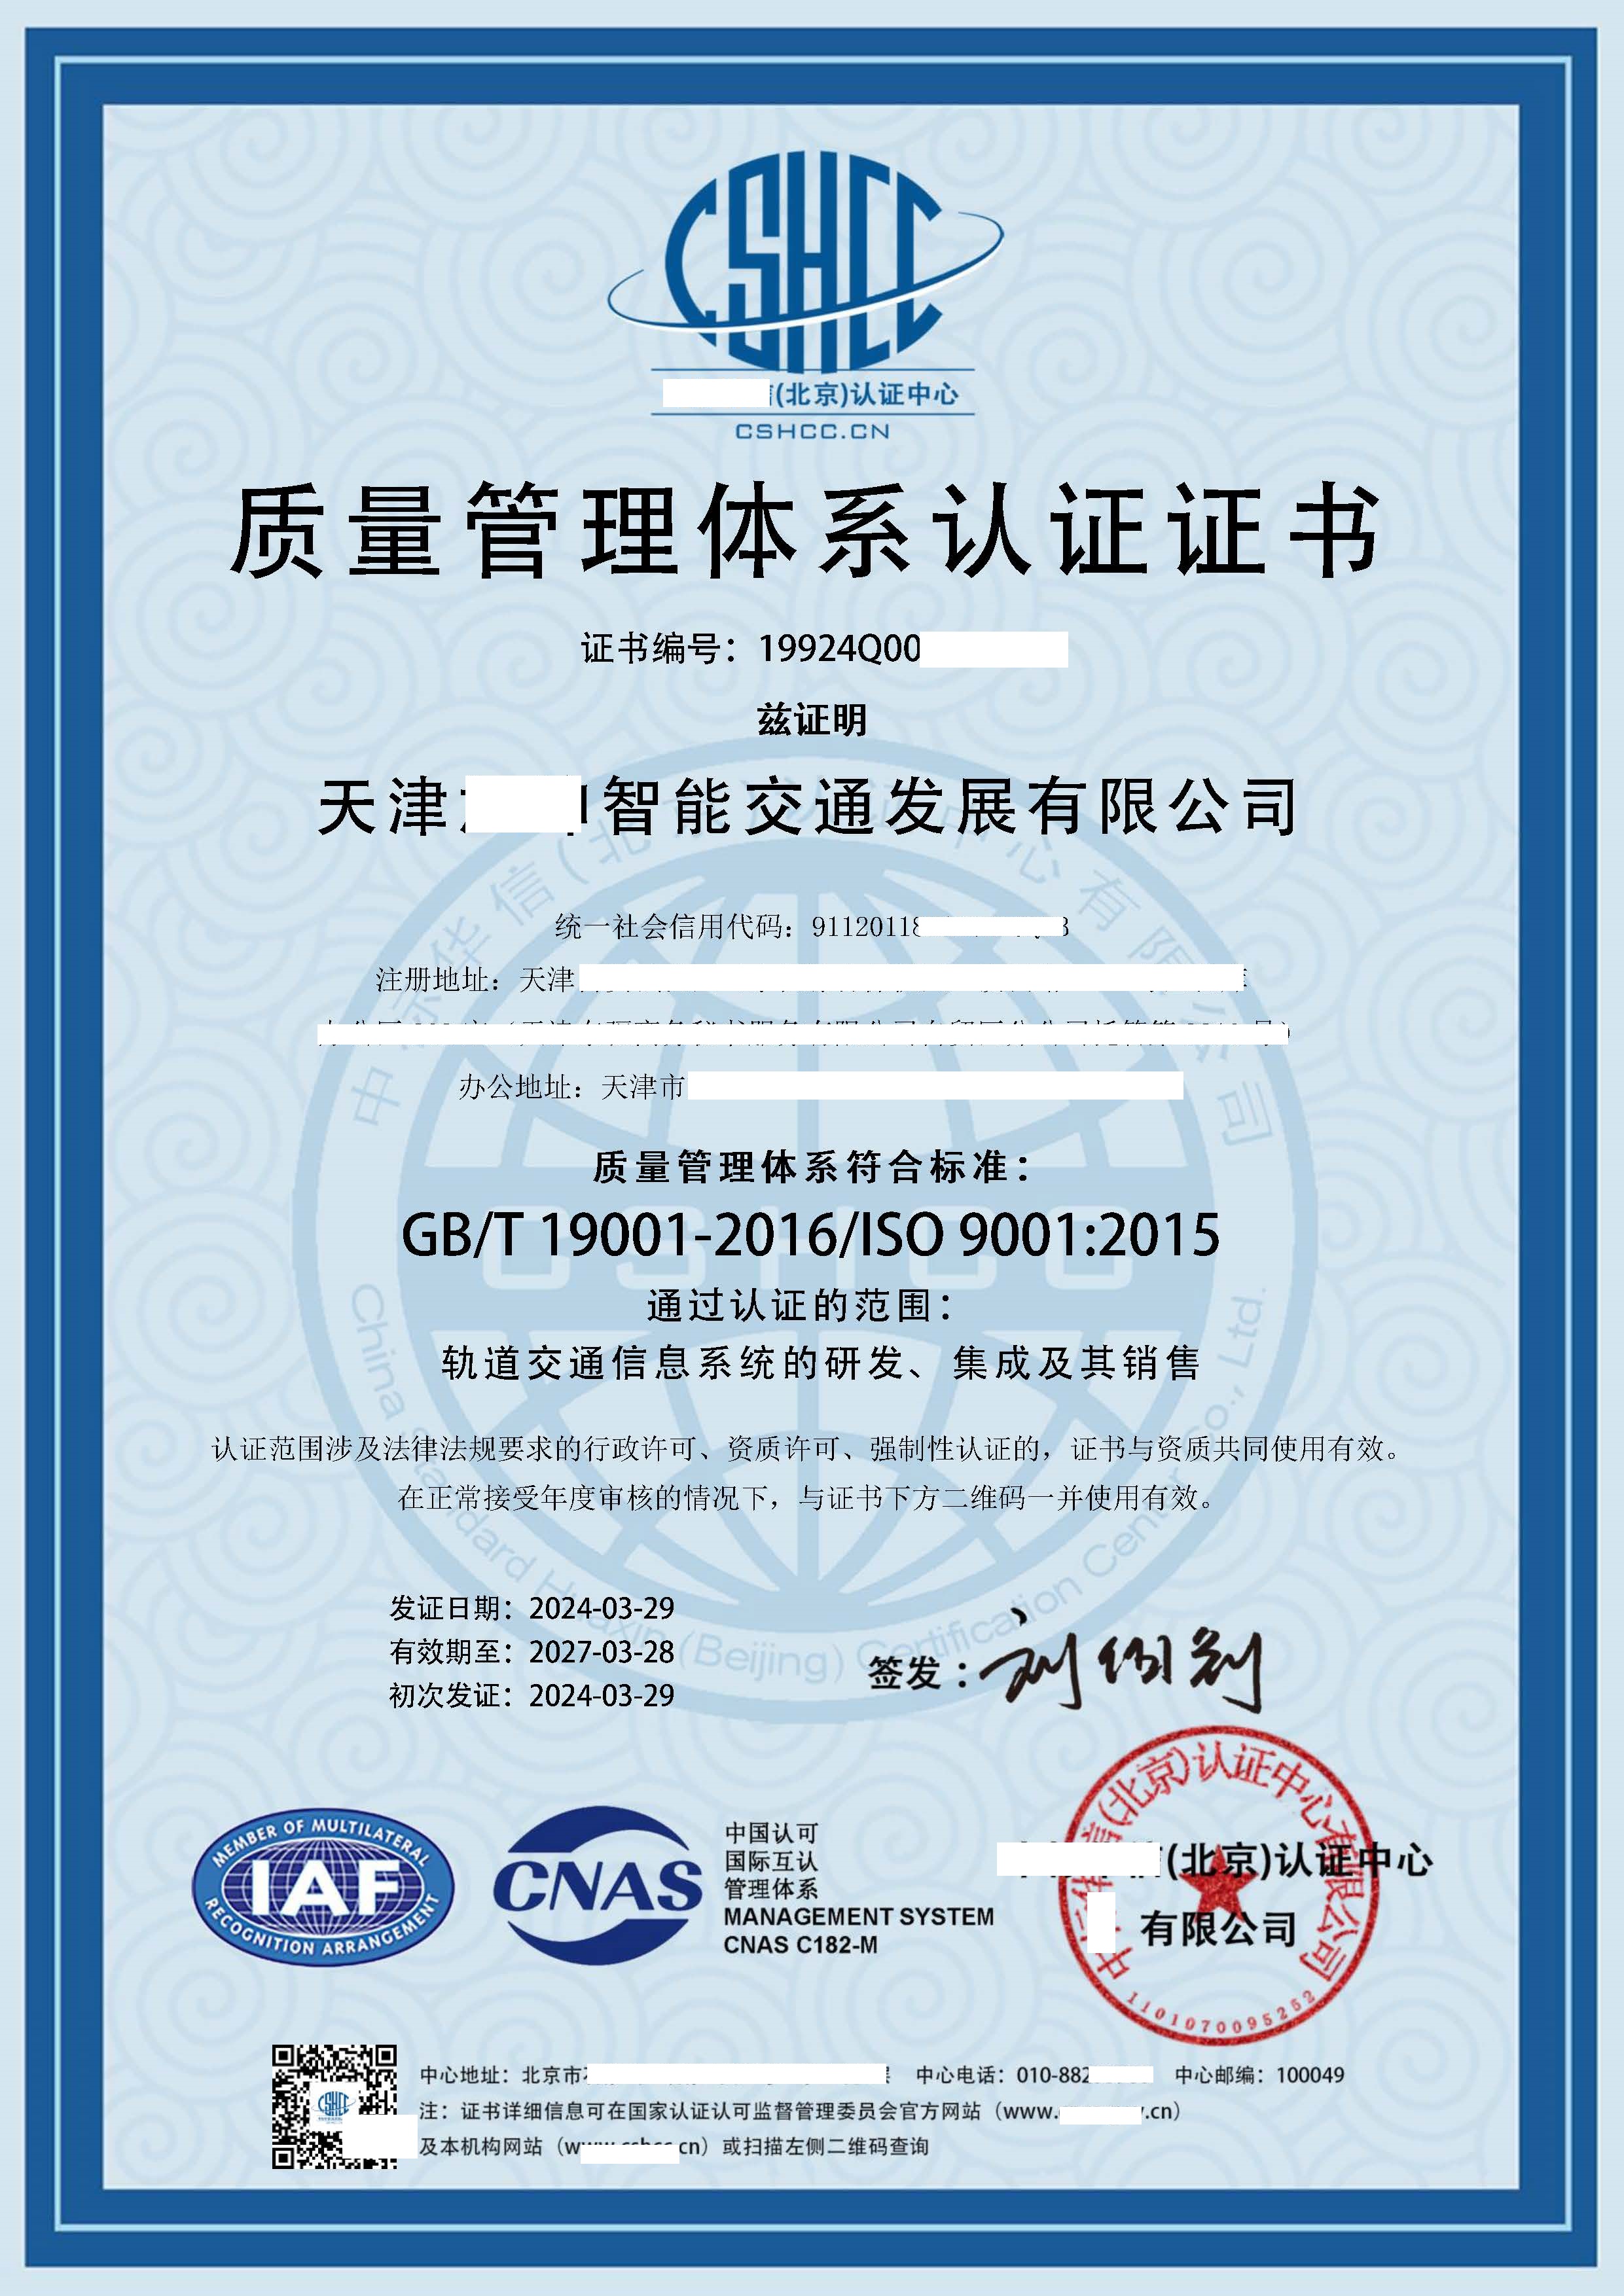 恭喜  天津**智能交通发展有限公司  获得ISO9001质量、ISO14001环境、ISO45001职业健康安全管理体系认证证书